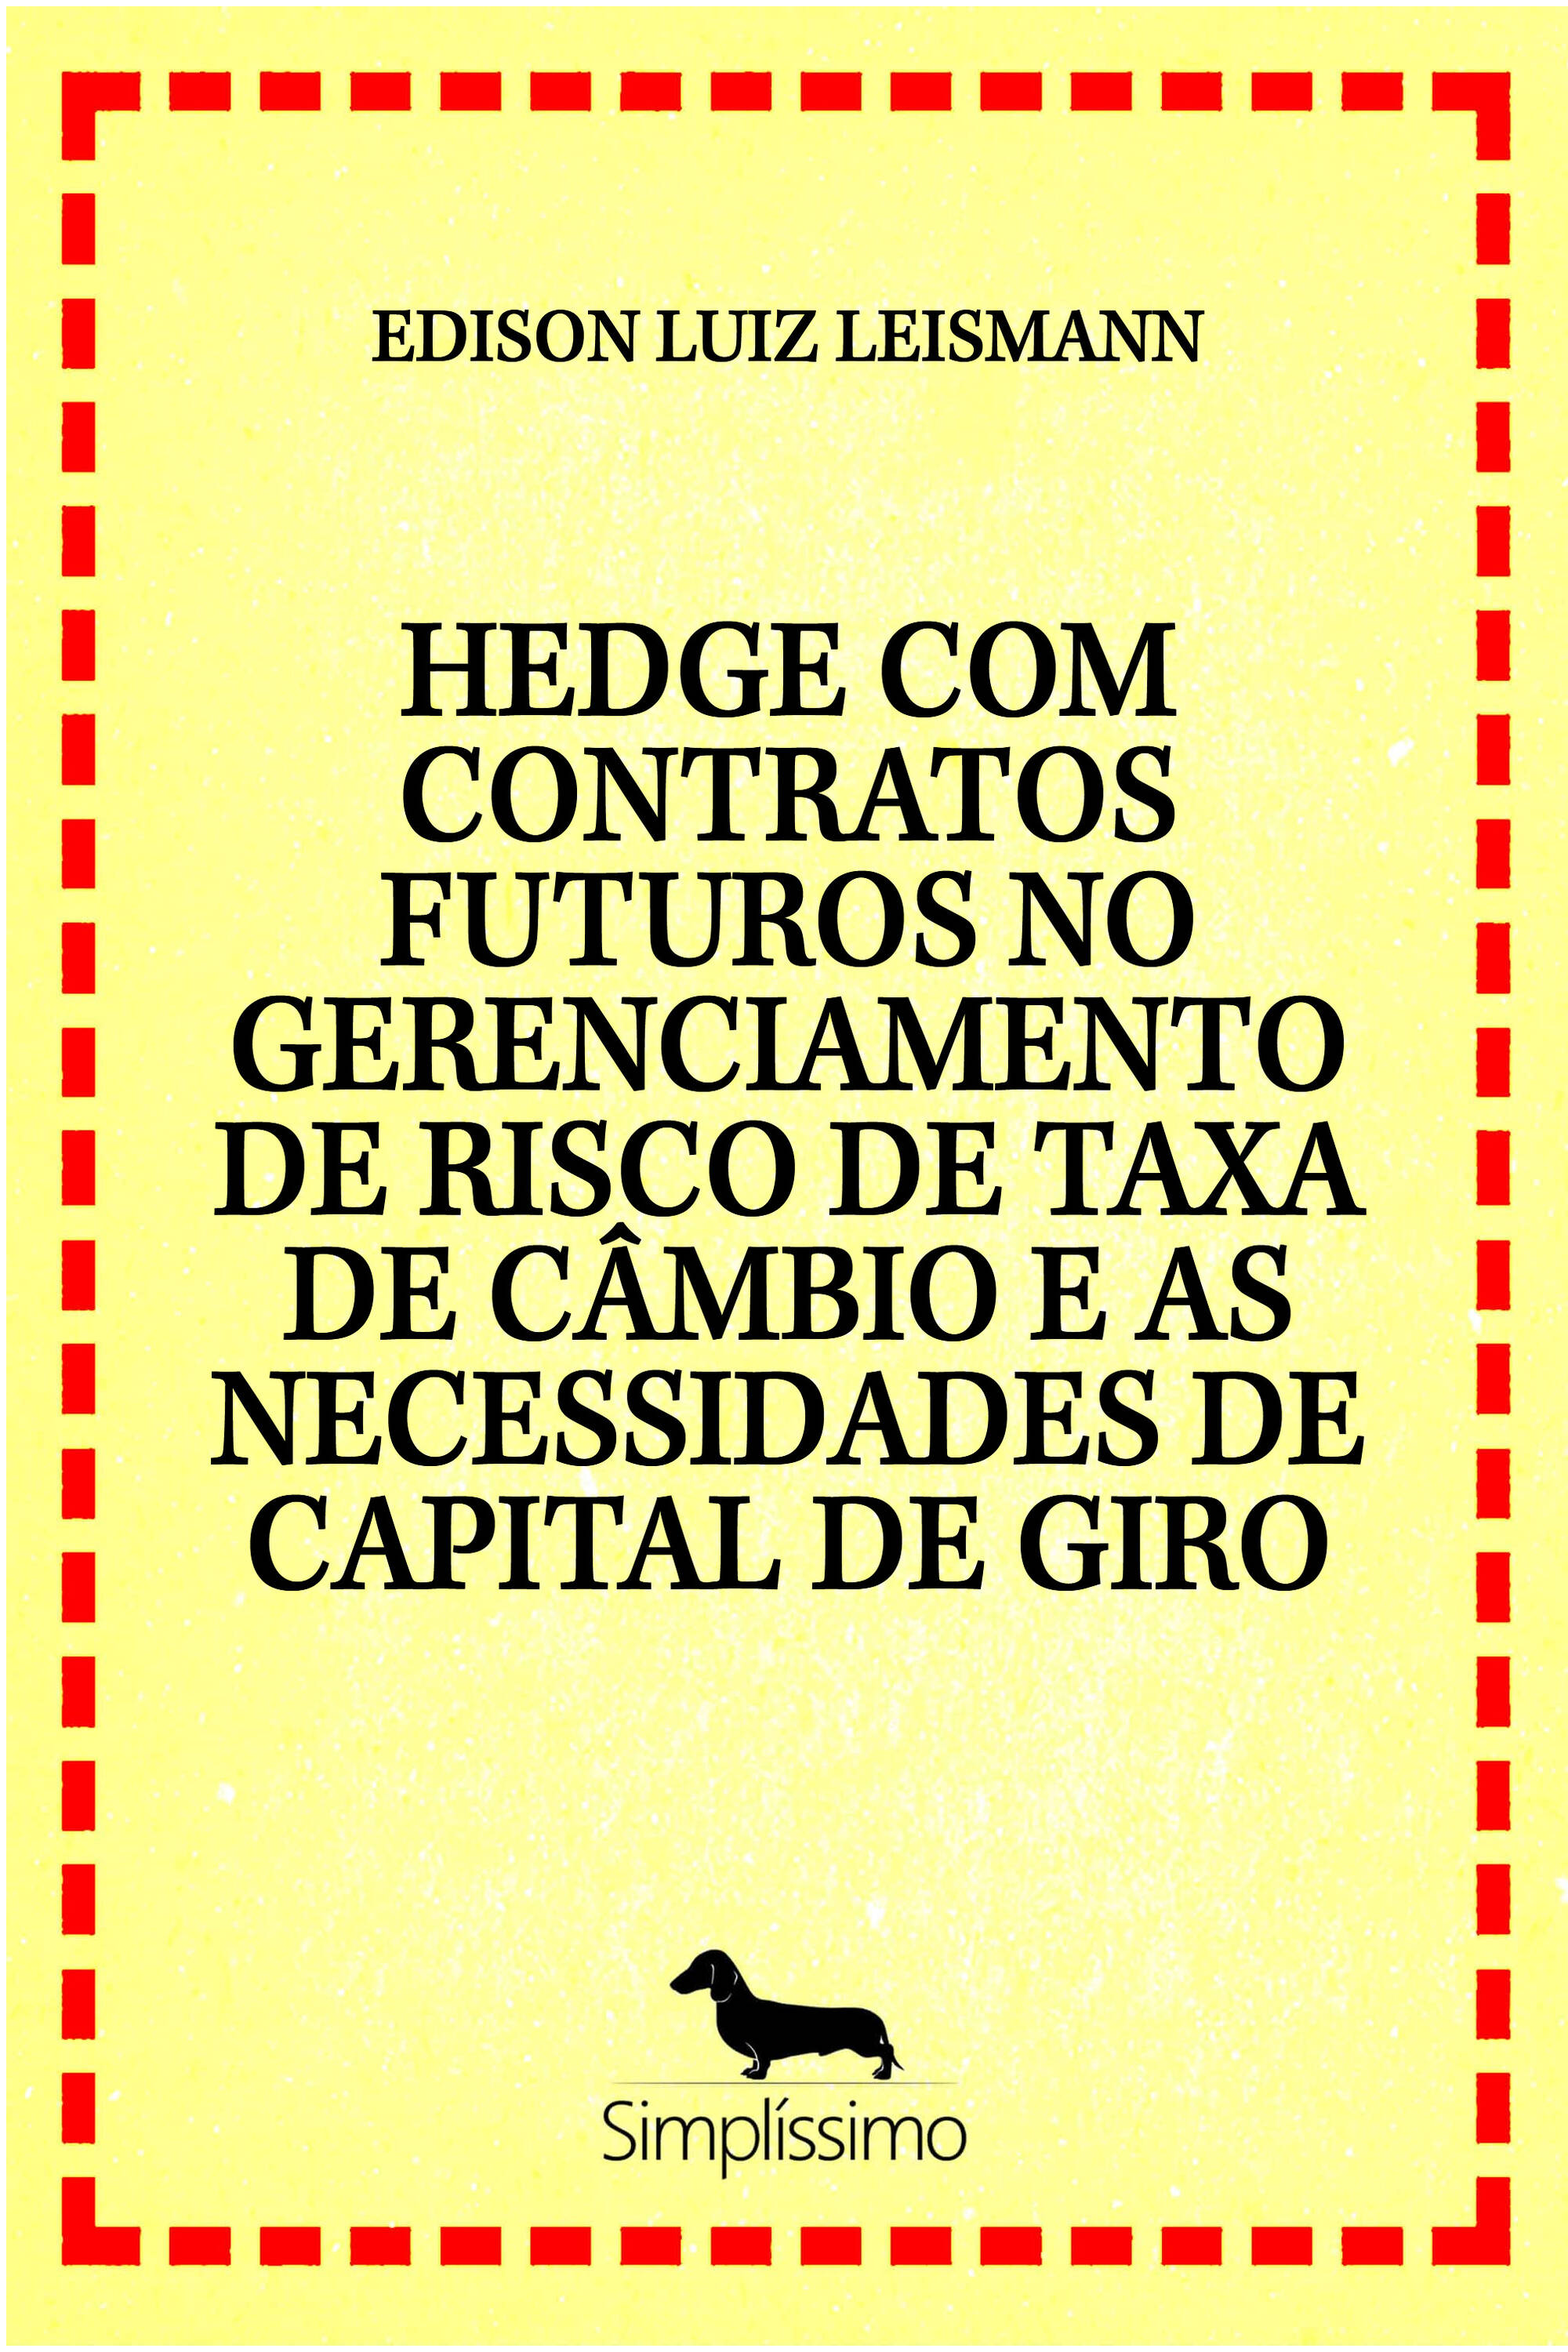 HEDGE COM CONTRATOS FUTUROS , O RISCO DA TAXA DE CÂMBIO E AS NECESSIDADES DE CAPITAL DE GIRO